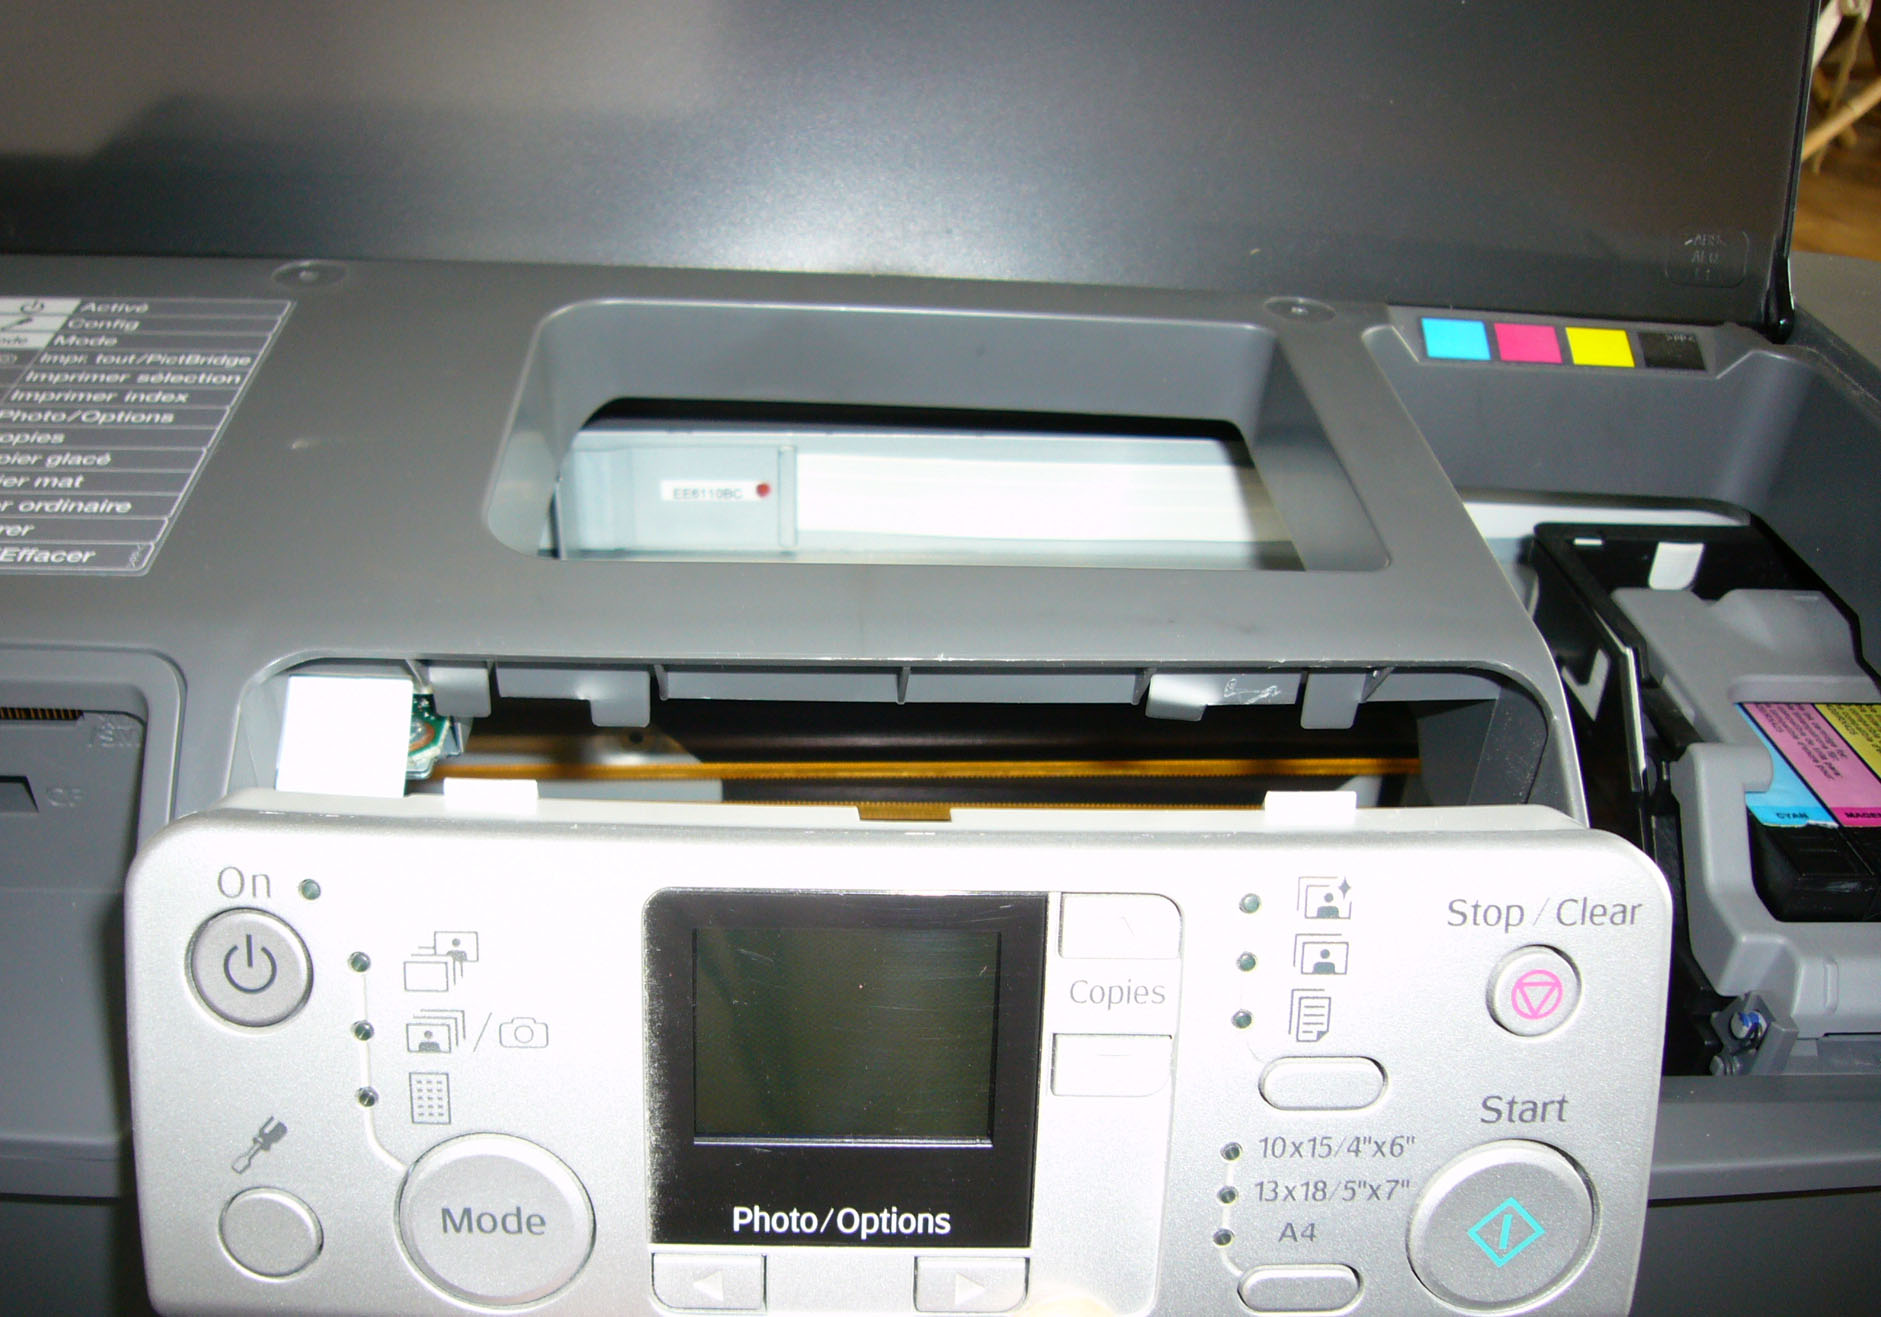 SubAudio - Nettoyage d'une imprimante Epson R245 - Tête d